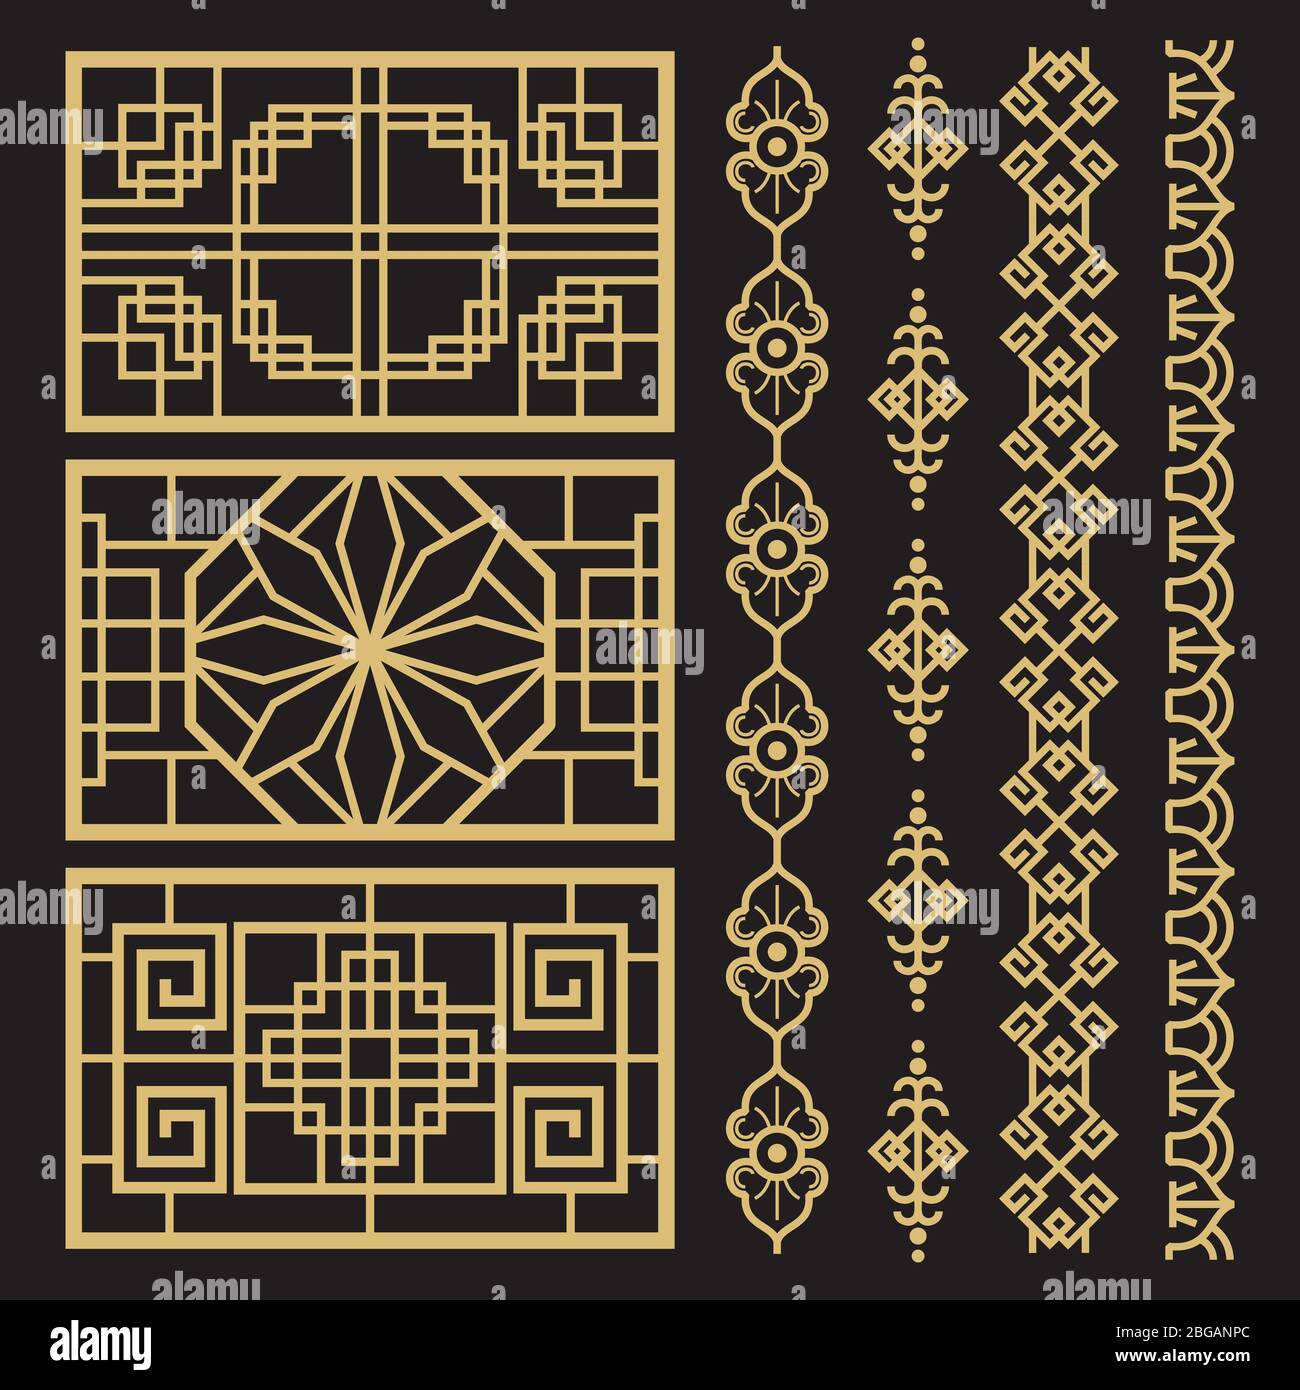 Chinesische Dekoration, traditionelle antike koreanische Bordüren und Rahmen. Traditionelles chinesisches und koreanisches Muster. Vektorgrafik Stock Vektor